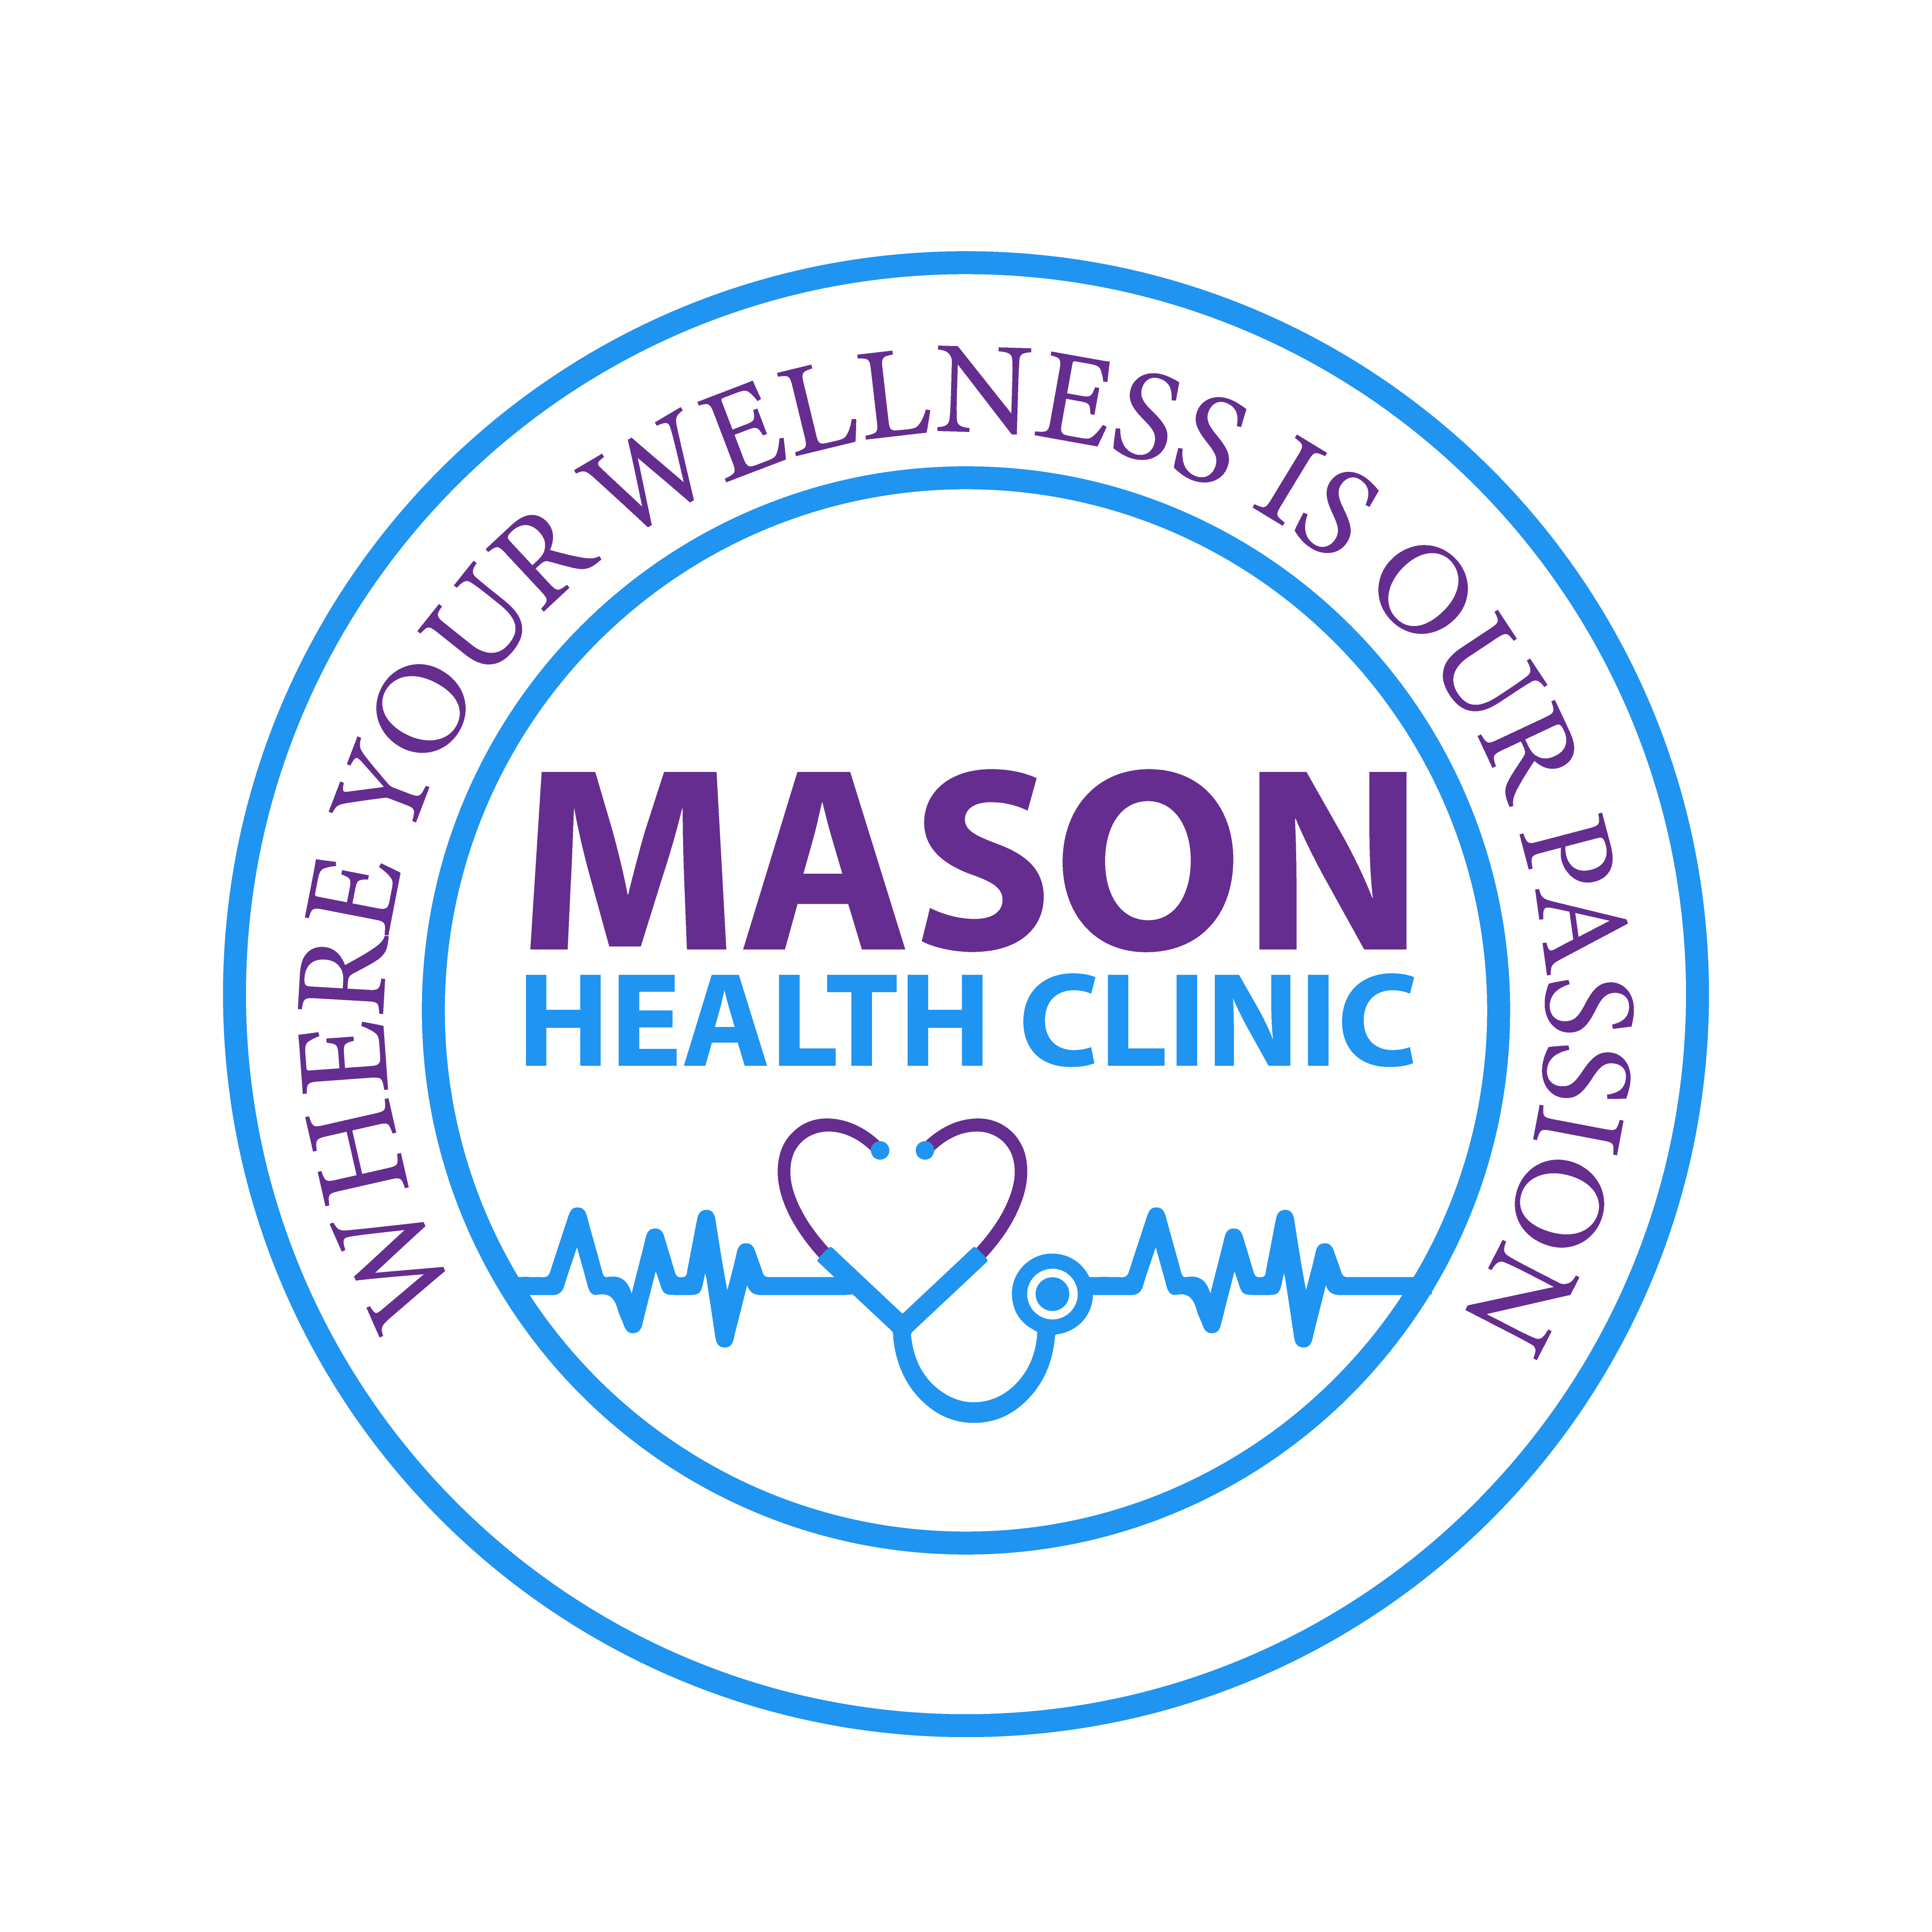 Mason Health Clinic